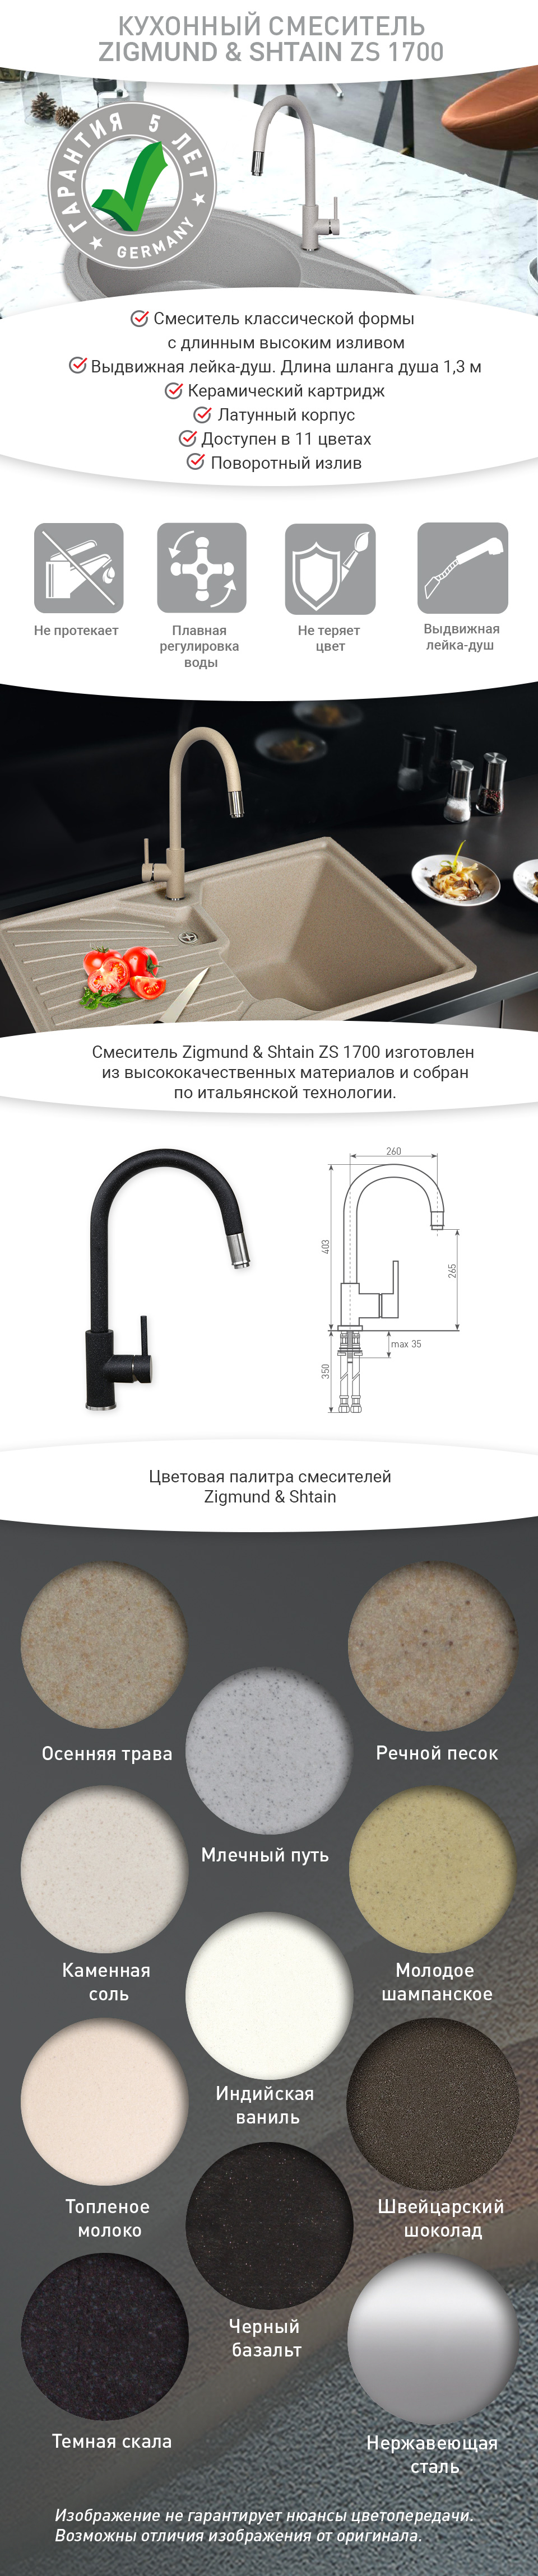 Смеситель Zigmund & Shtain ZS 1700 Индийская ваниль